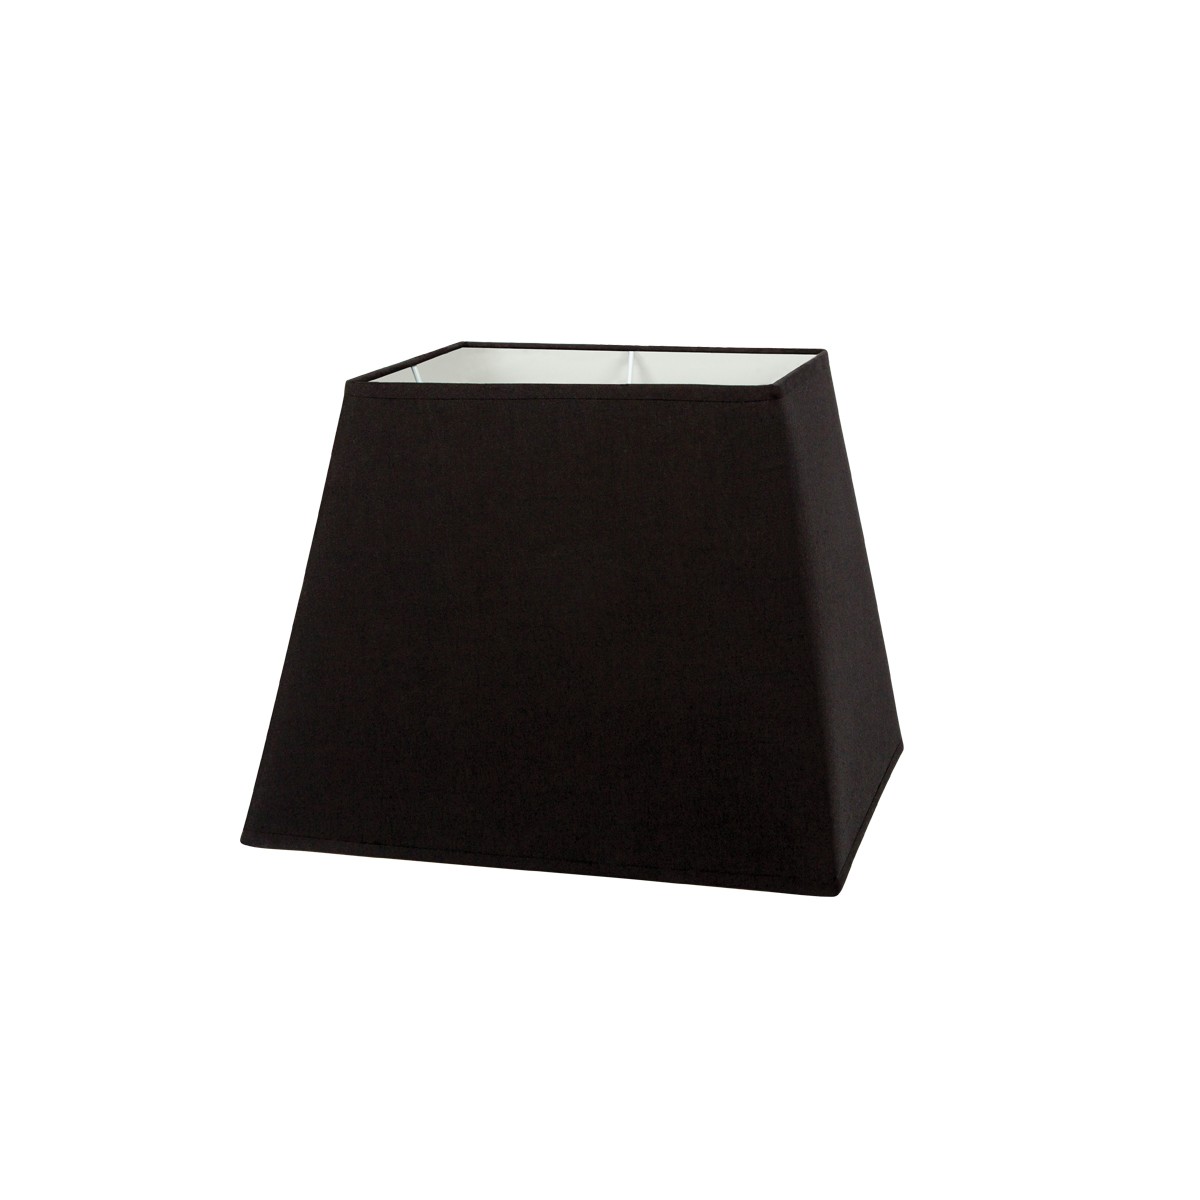 Καπέλο μονόχρωμο τραπέζιο 1 cotton 31cm κάτω πλευρά μαύρο VK/E27/E14/SM31/B